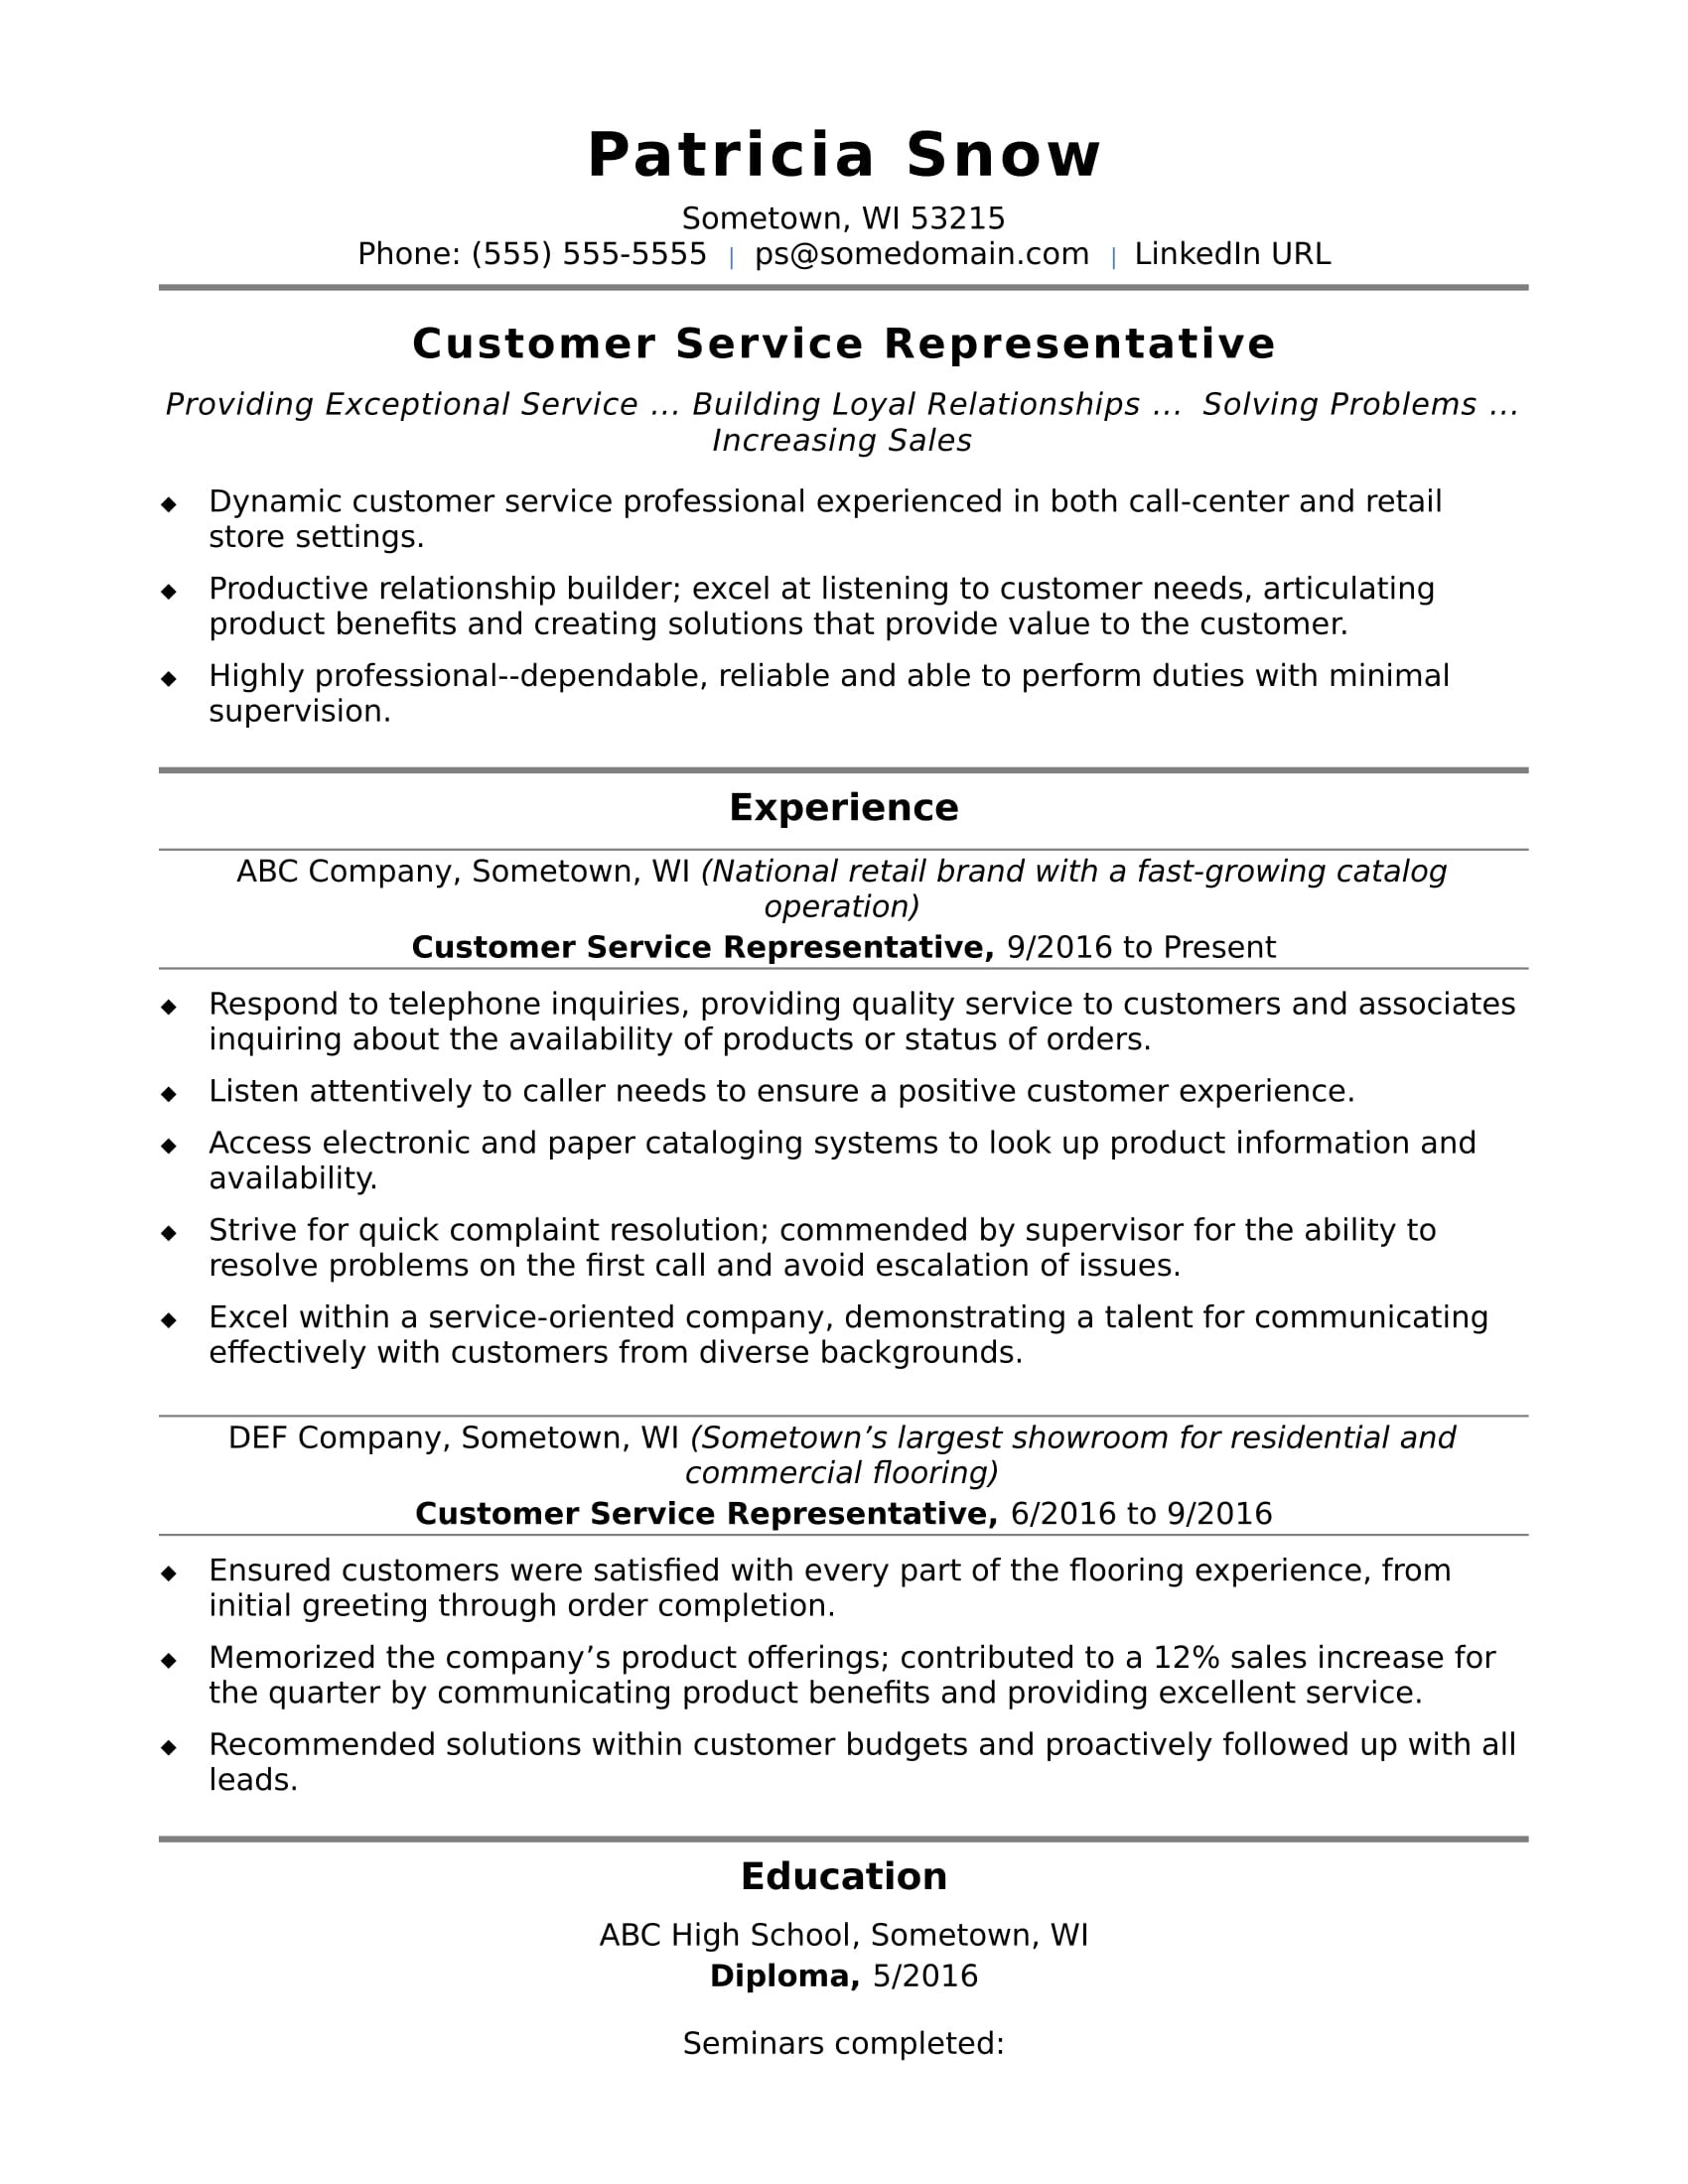 Sample Resume for Customer Service Representative In Retail Customer Service Representative Resume Sample Monster.com